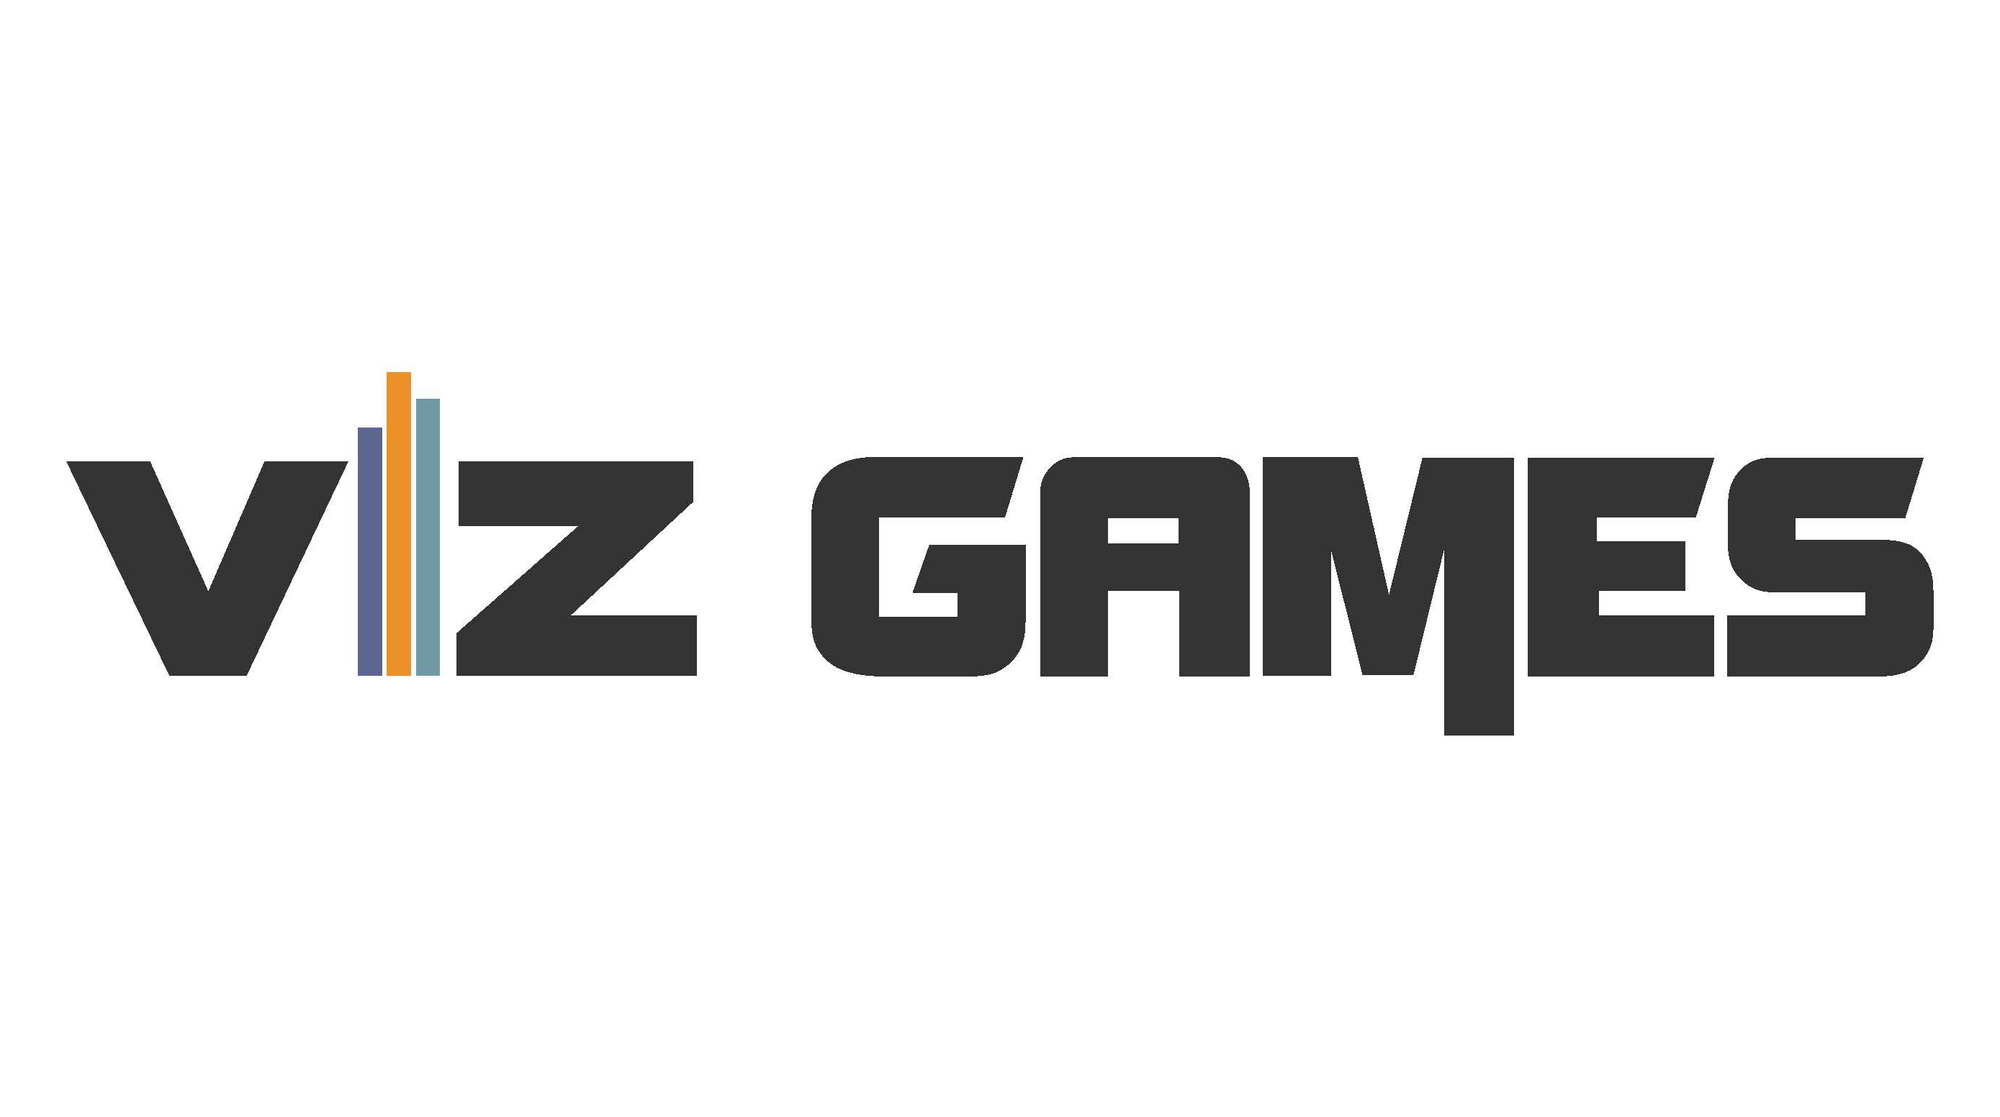 Zu Toolkit: Visualisierungsspiele („Viz Games“)